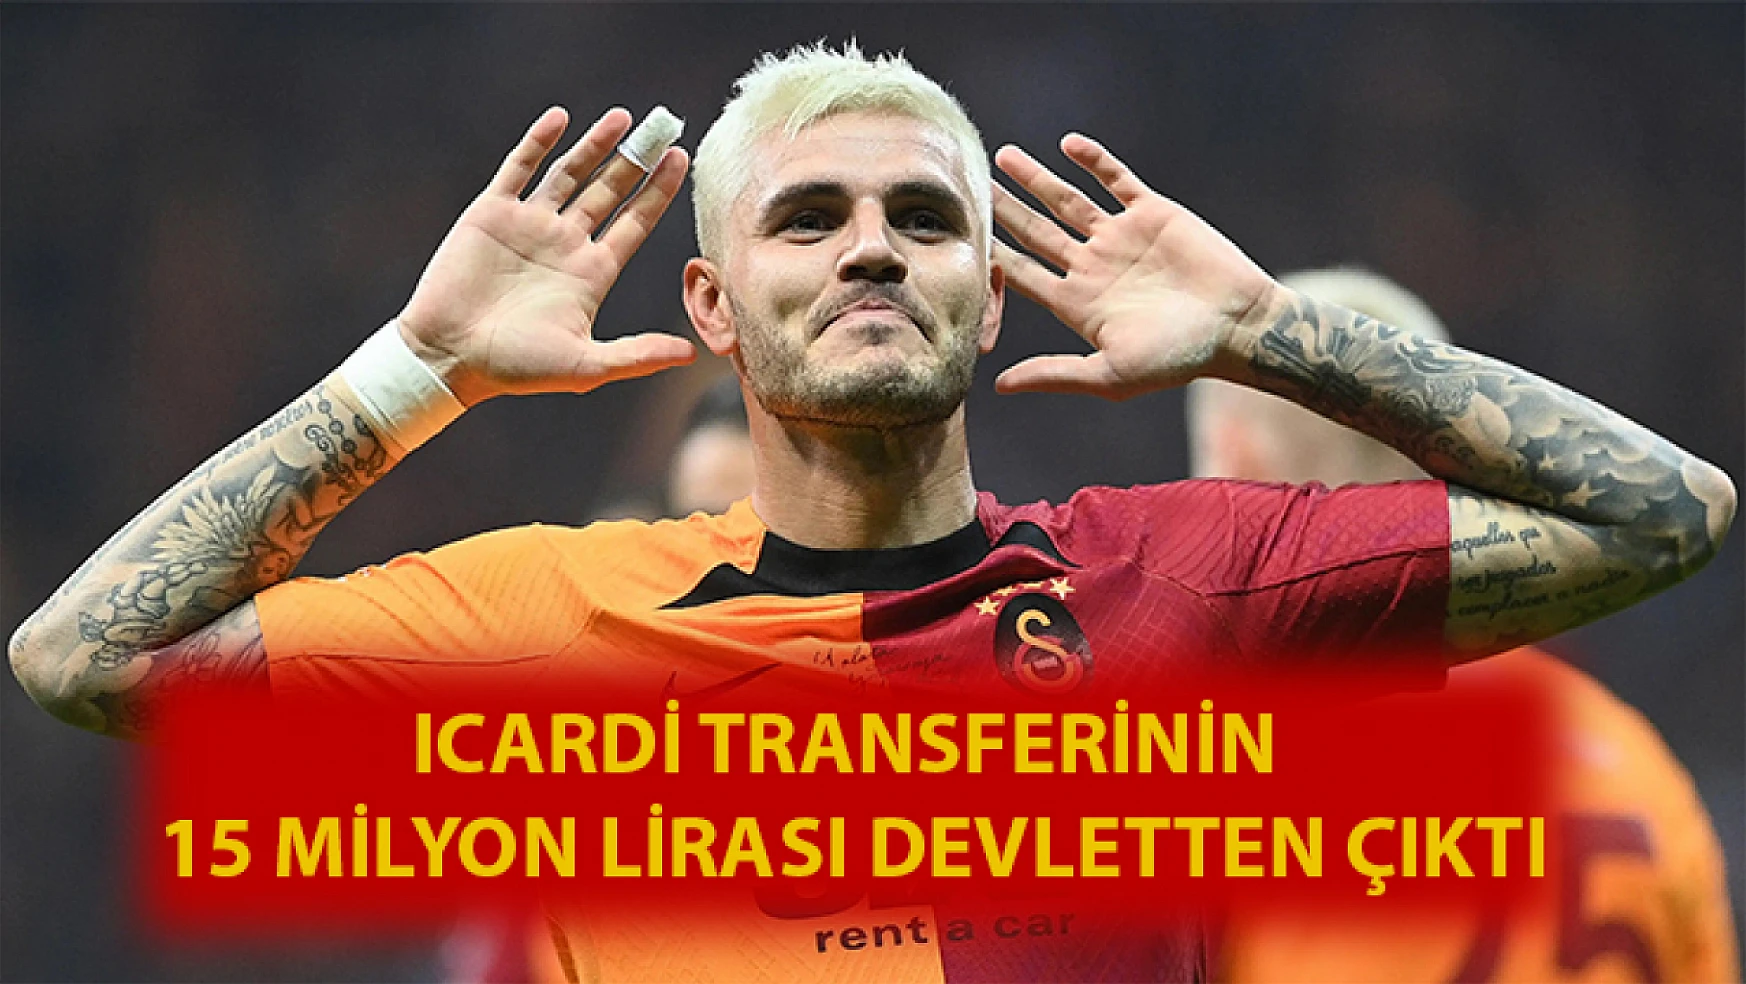 Icardi transferinin 15 milyon lirası devletten çıktı